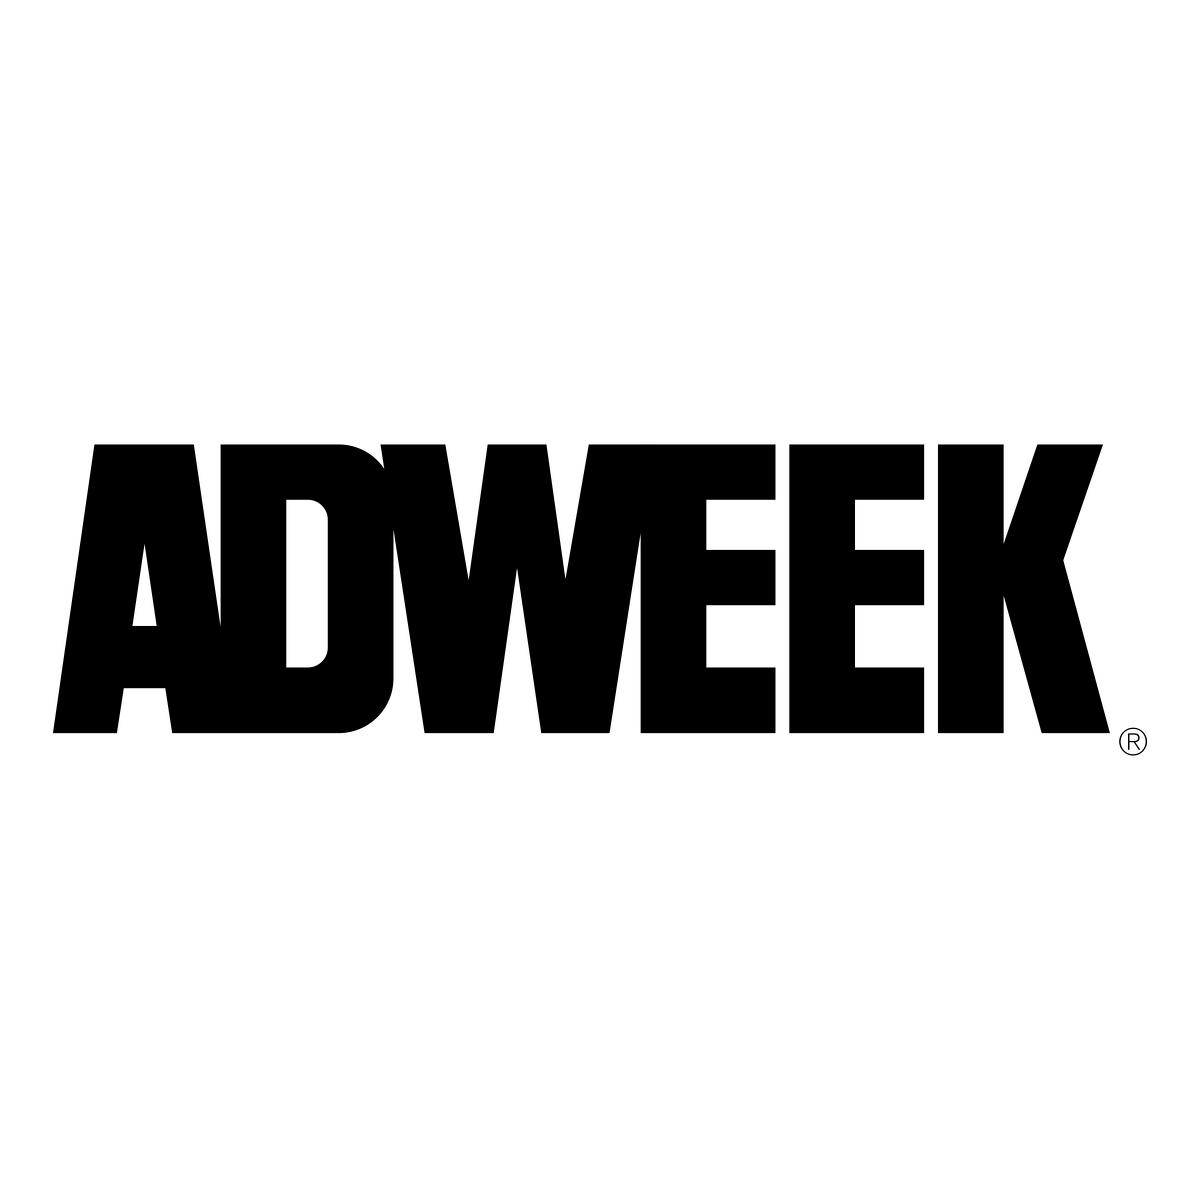  2021/08/Adweek-Logo.png 